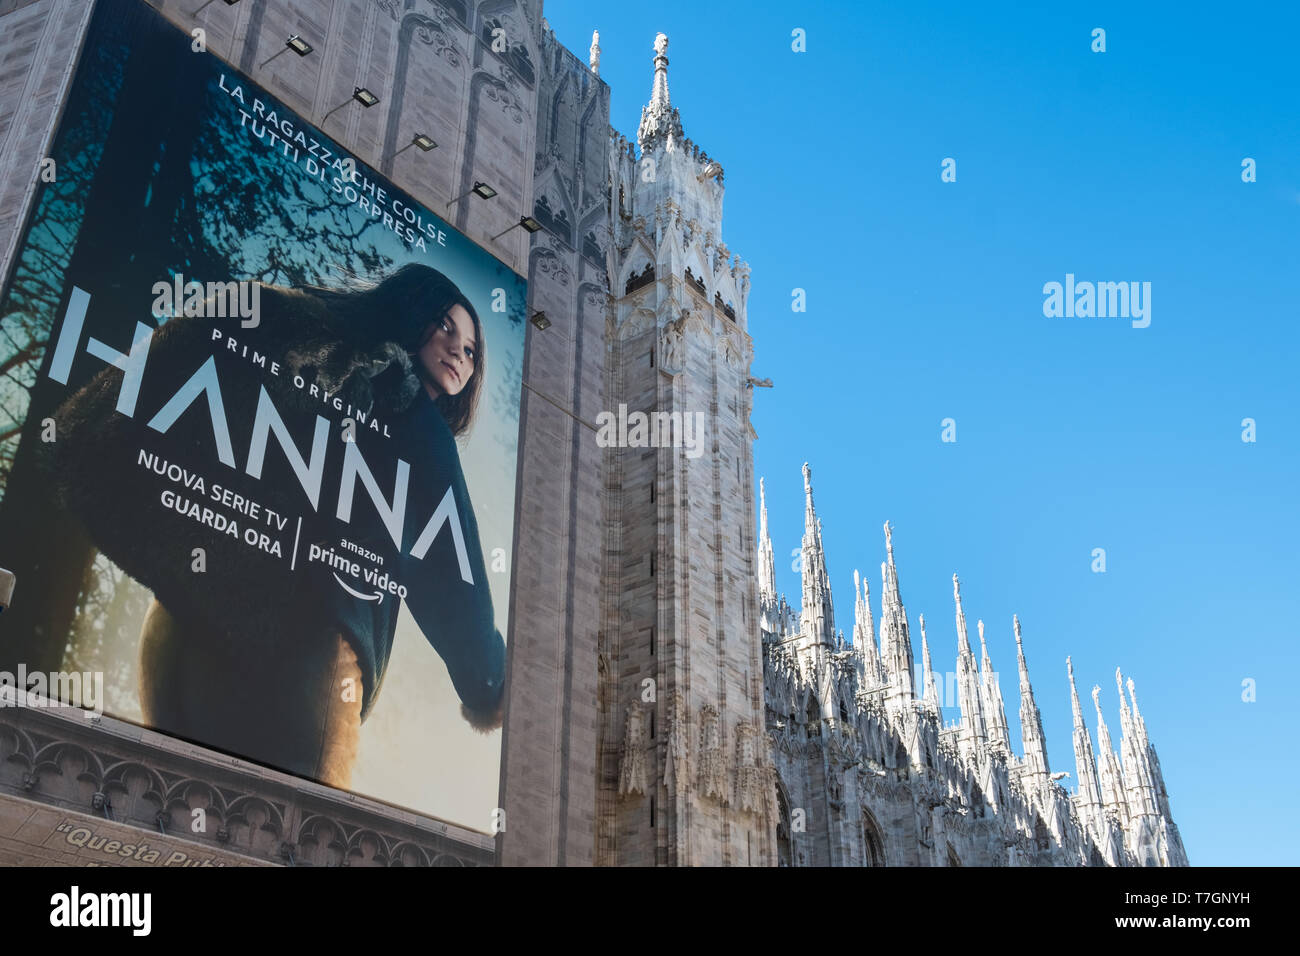 Werbung für Amazon Prime an der Außenseite von der Mailänder Dom, der  Piazza del Duomo, Mailand, Italien Stockfotografie - Alamy